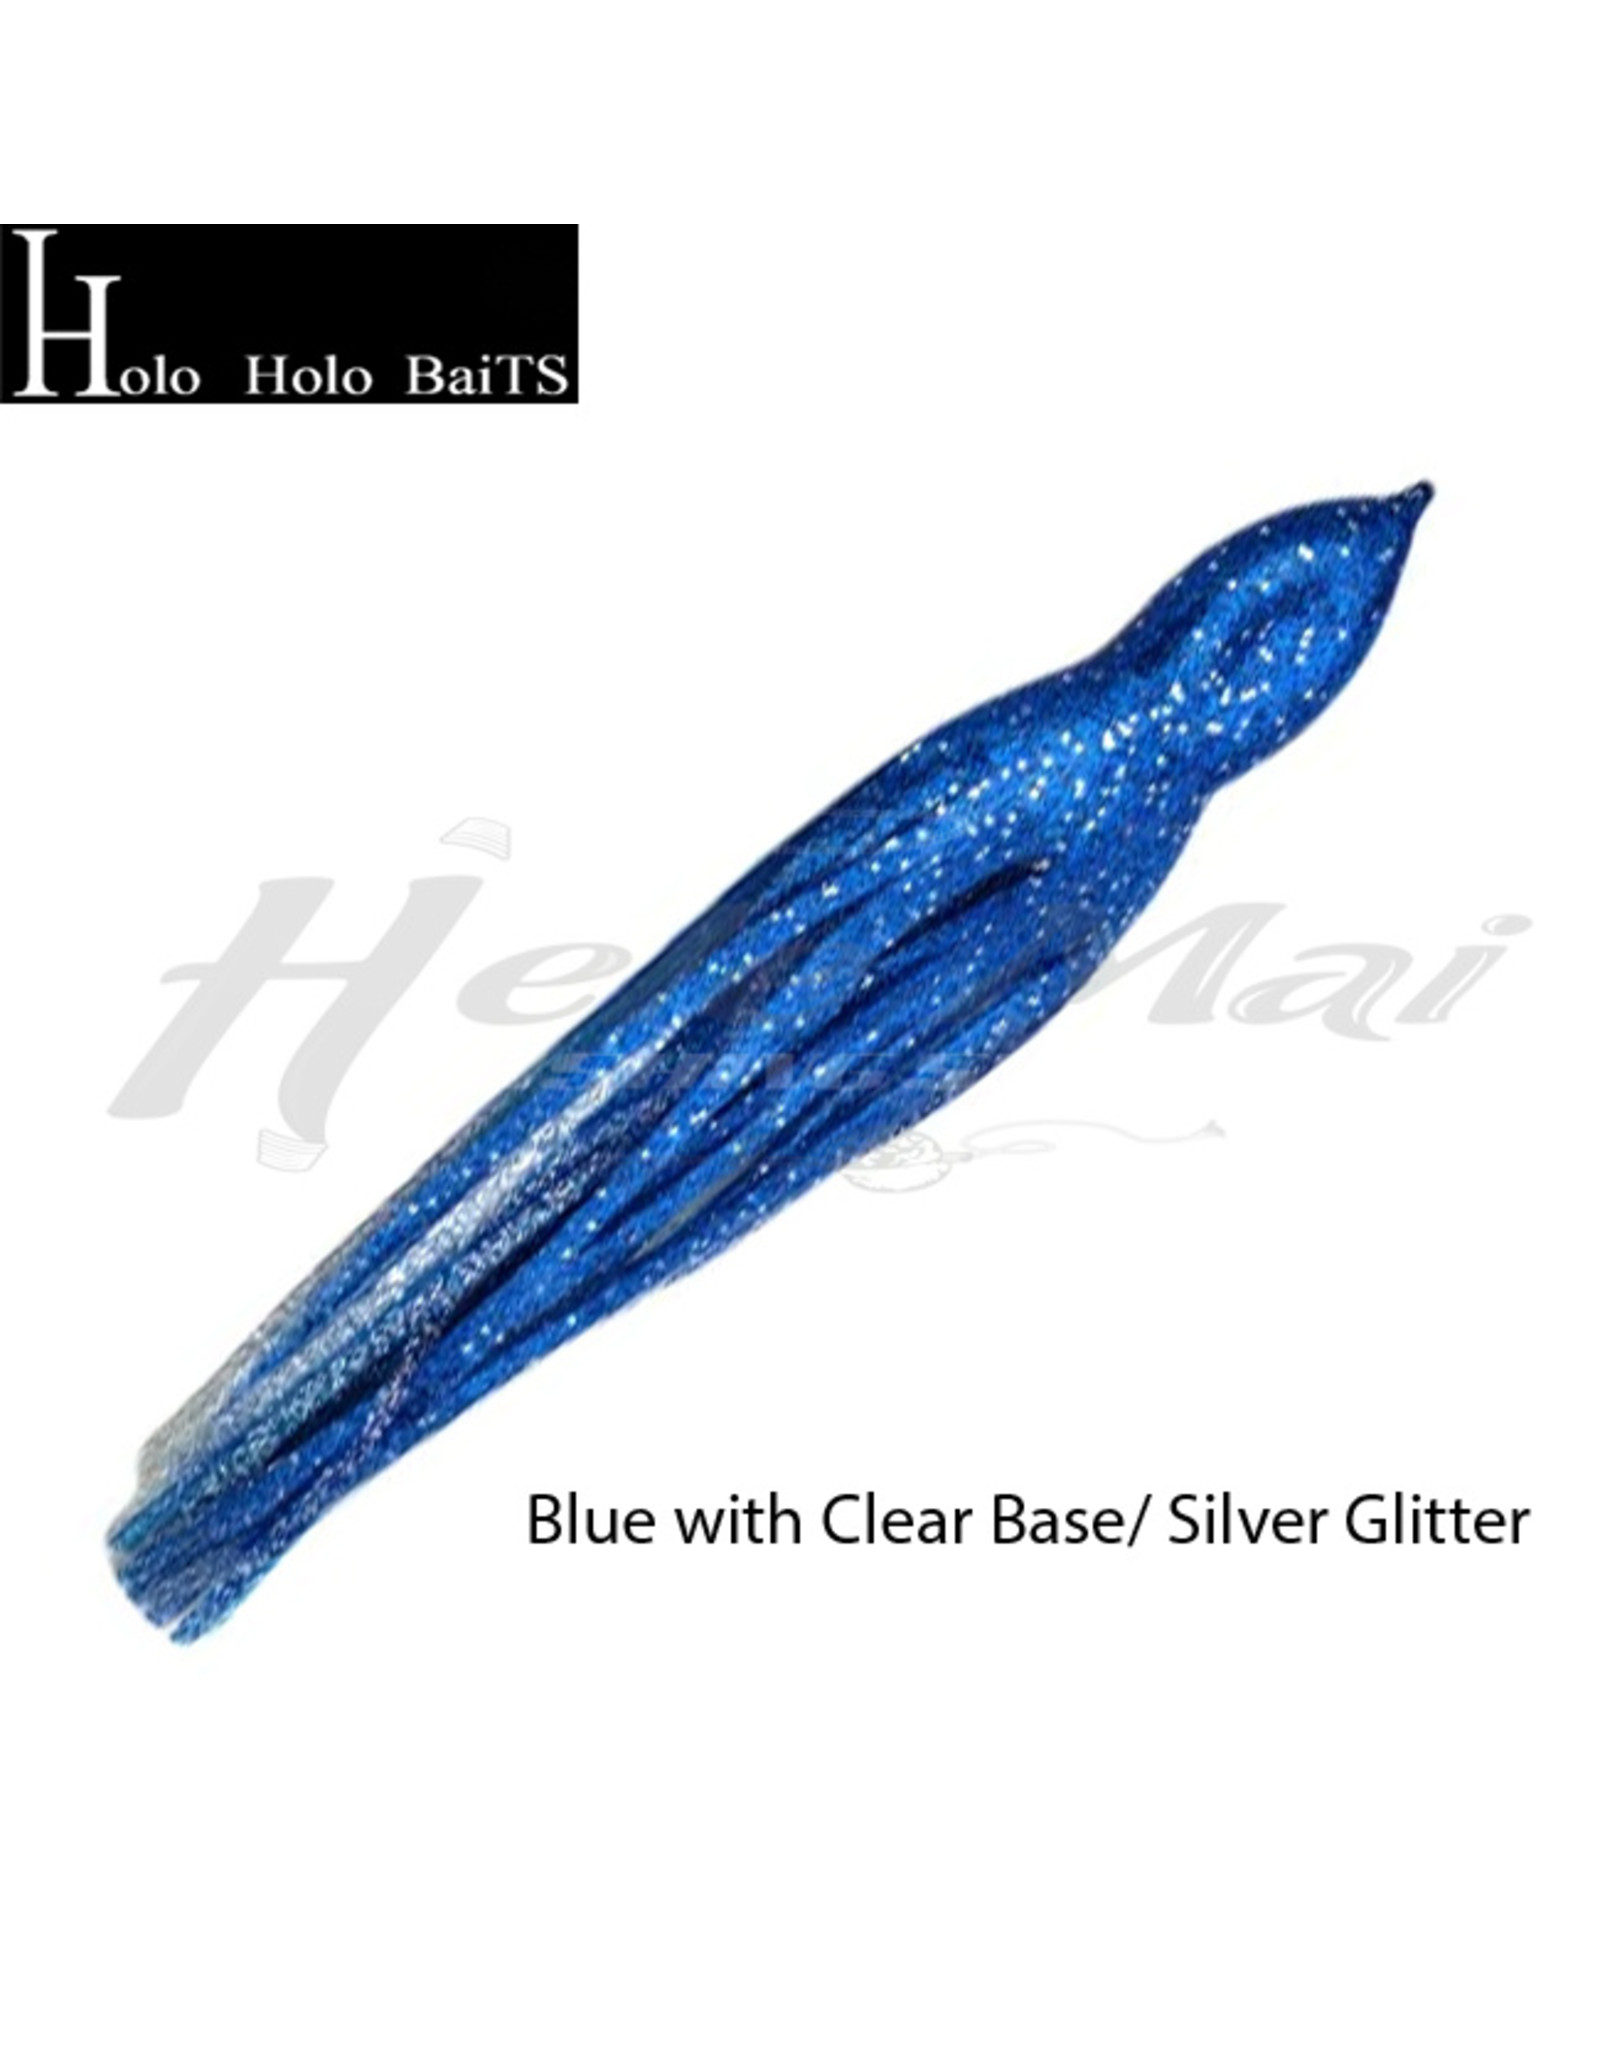 HOLO HOLO HAWAII (HHH) HH, 7" SQUID SKIRT BLUE GLITTER  B10/G19*G12